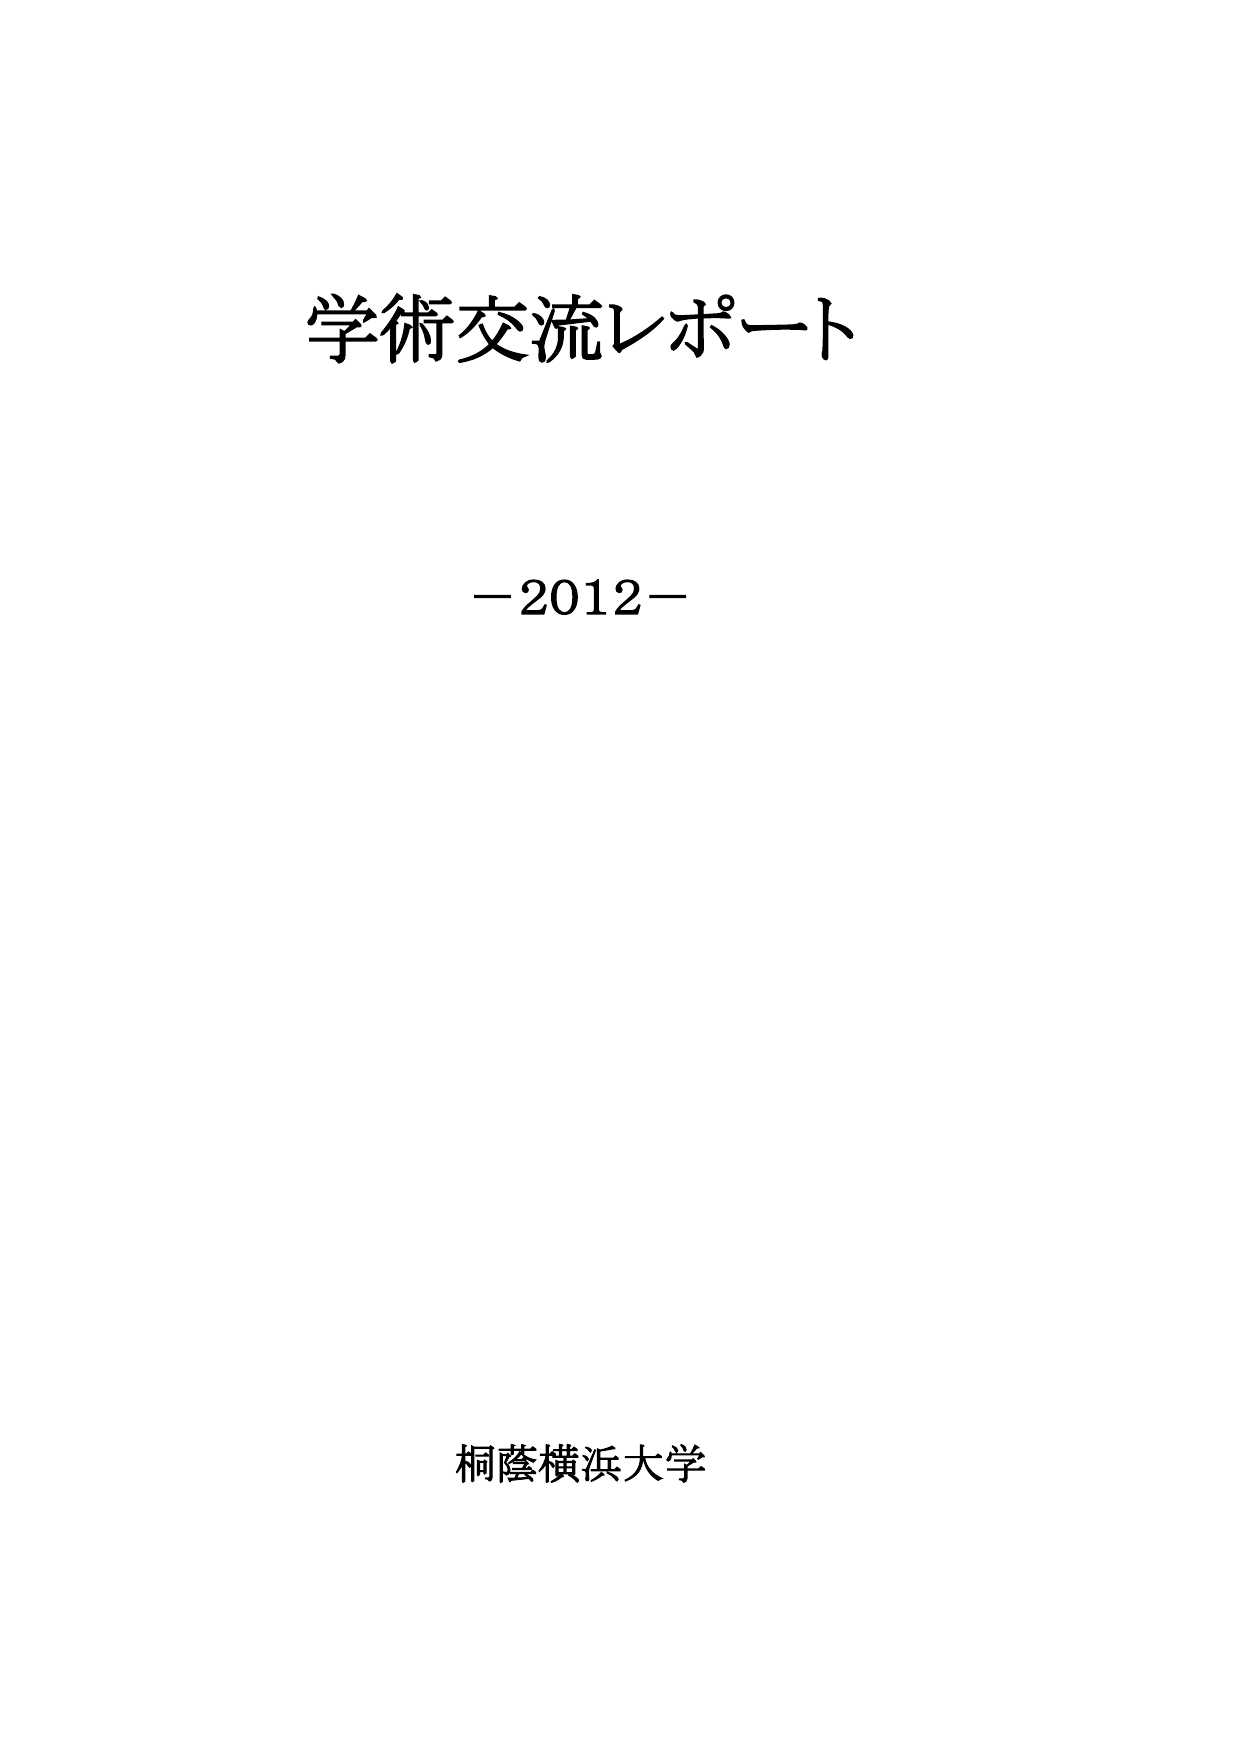 学術交流レポート -2012